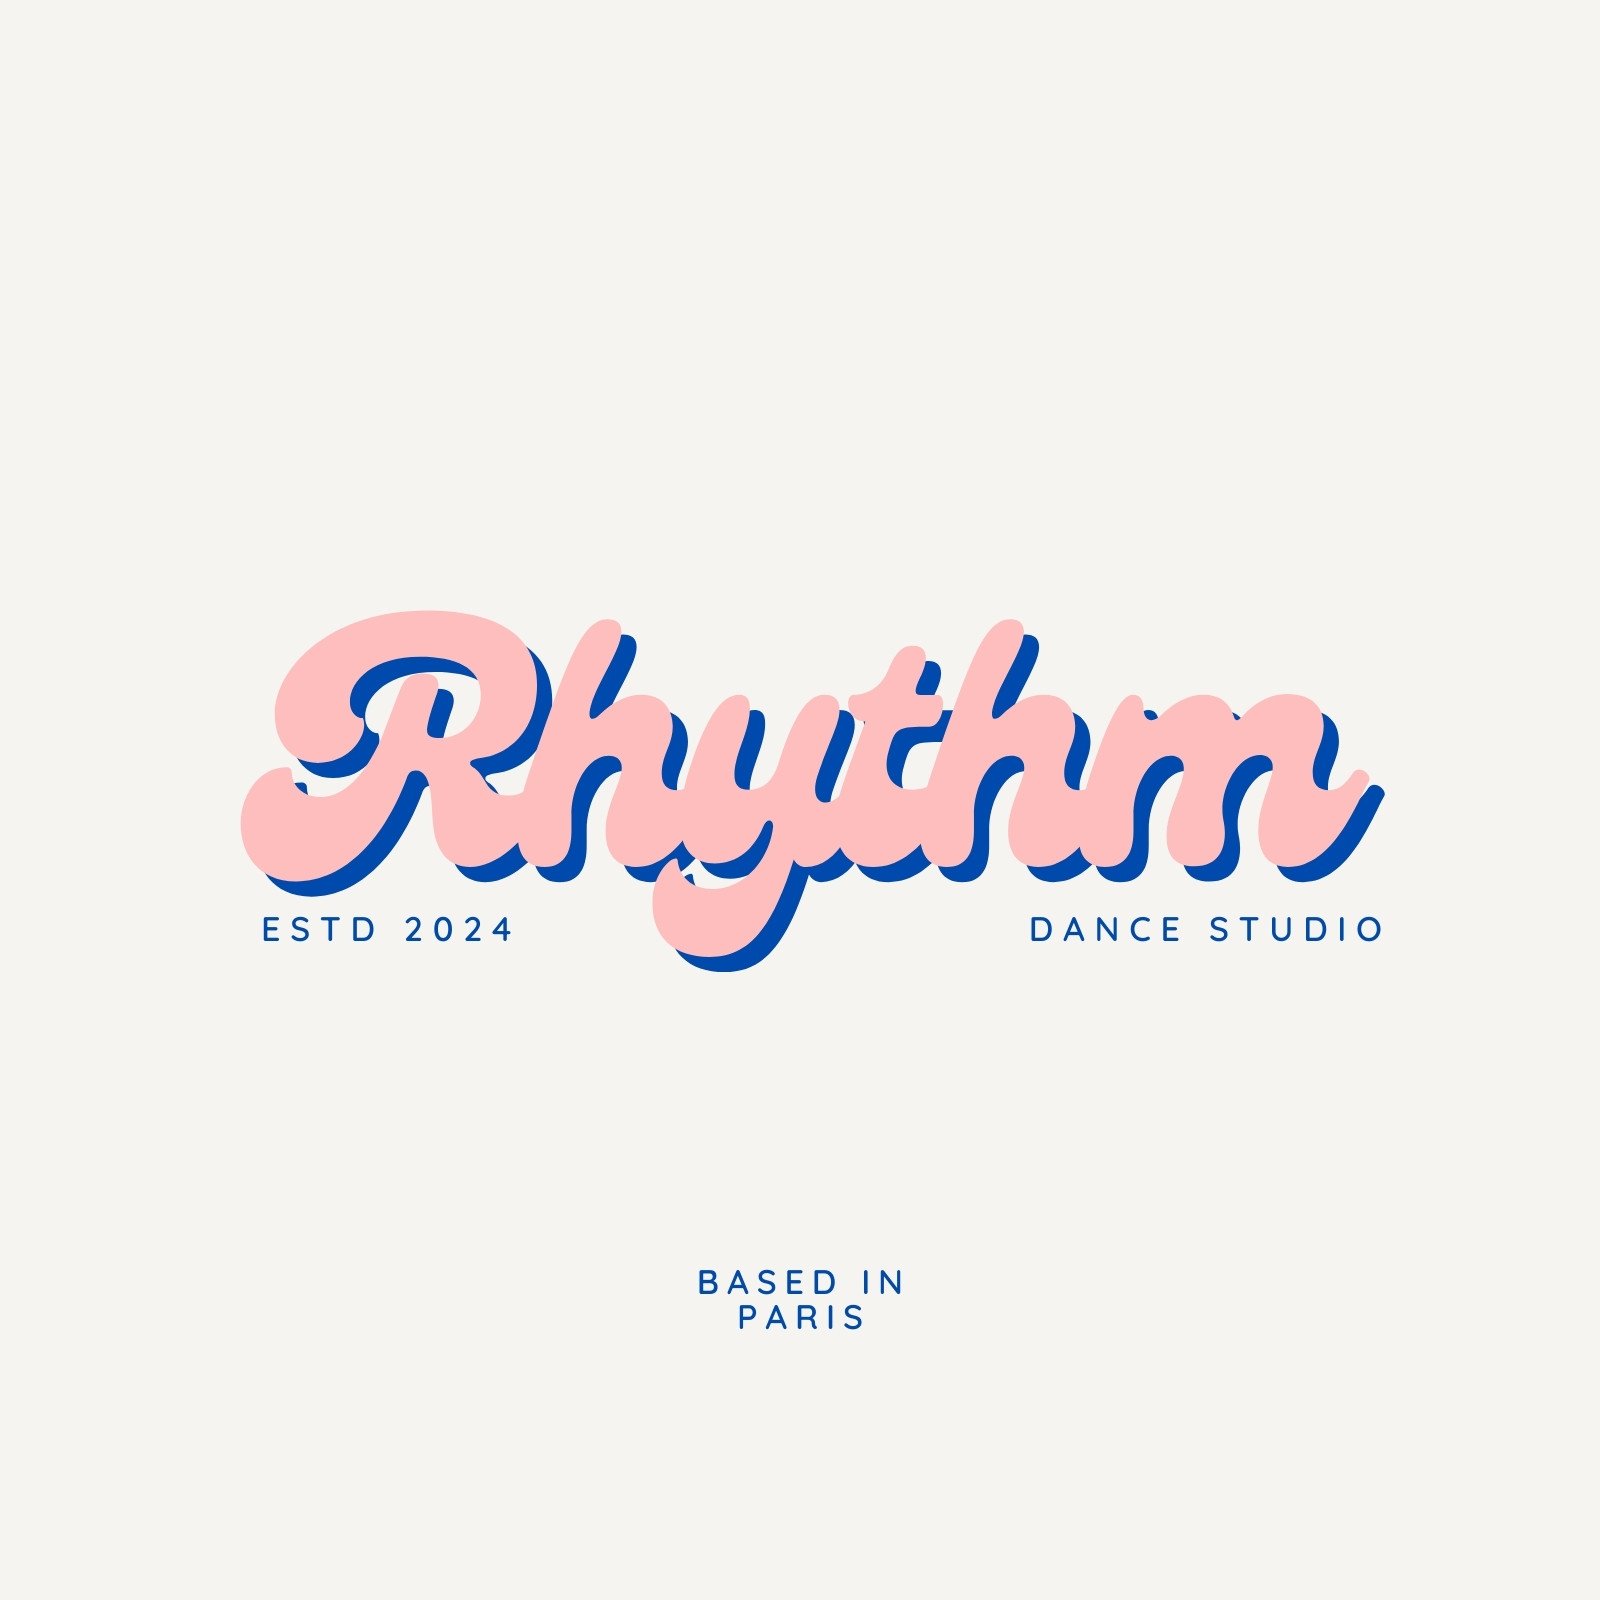 Find your rhythm logo | Logo design contest | 99designs